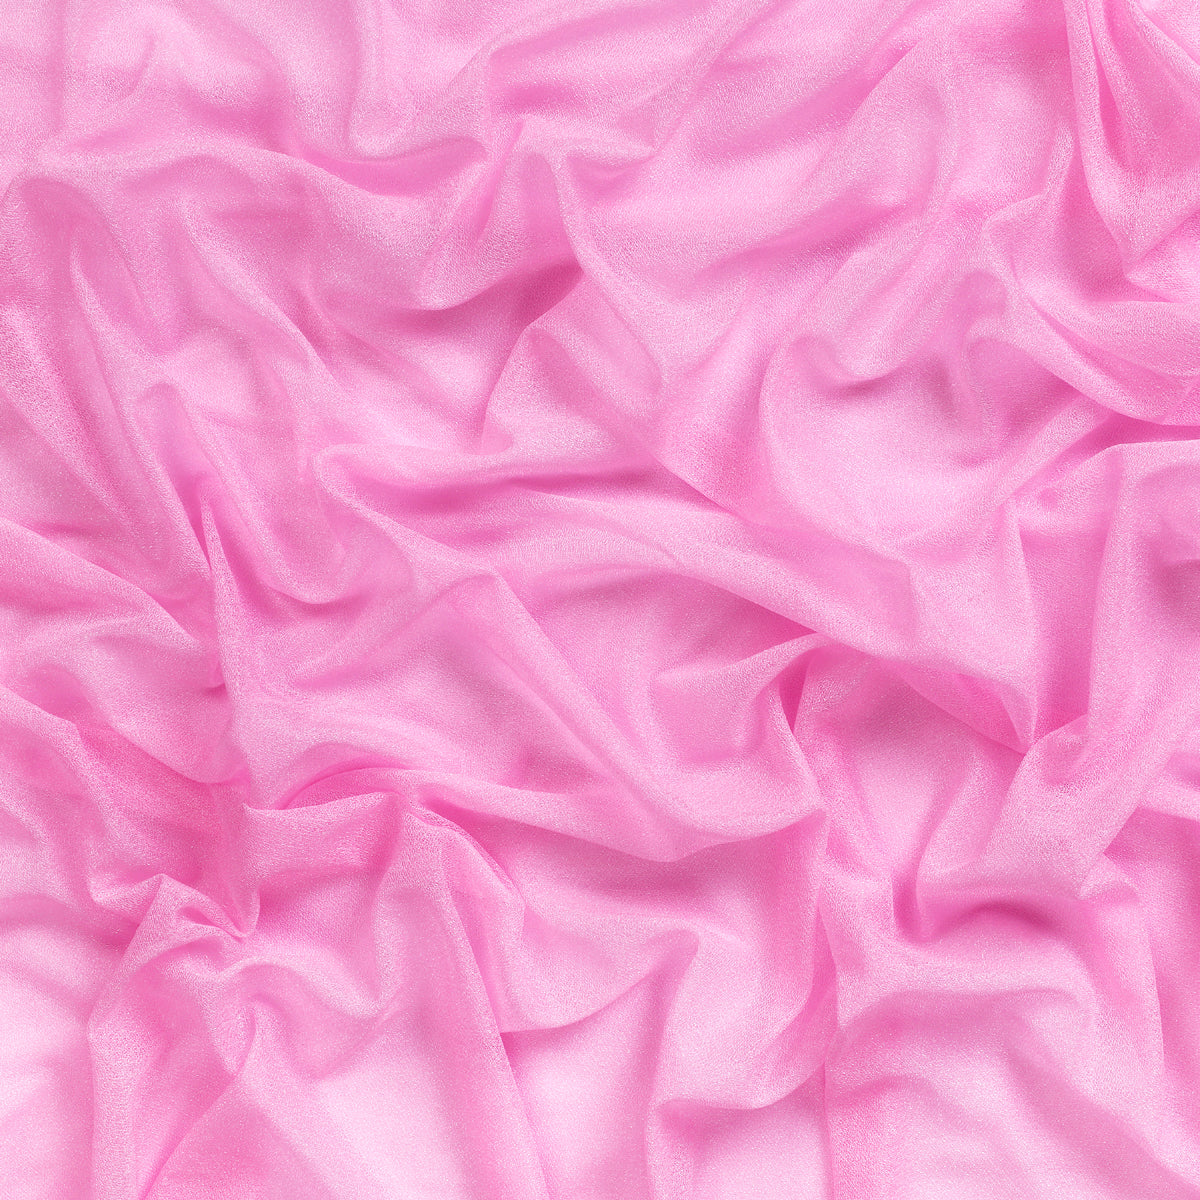 Bubblegum Pink,a493623e-d9c3-4ed1-ac55-8eb113600f80